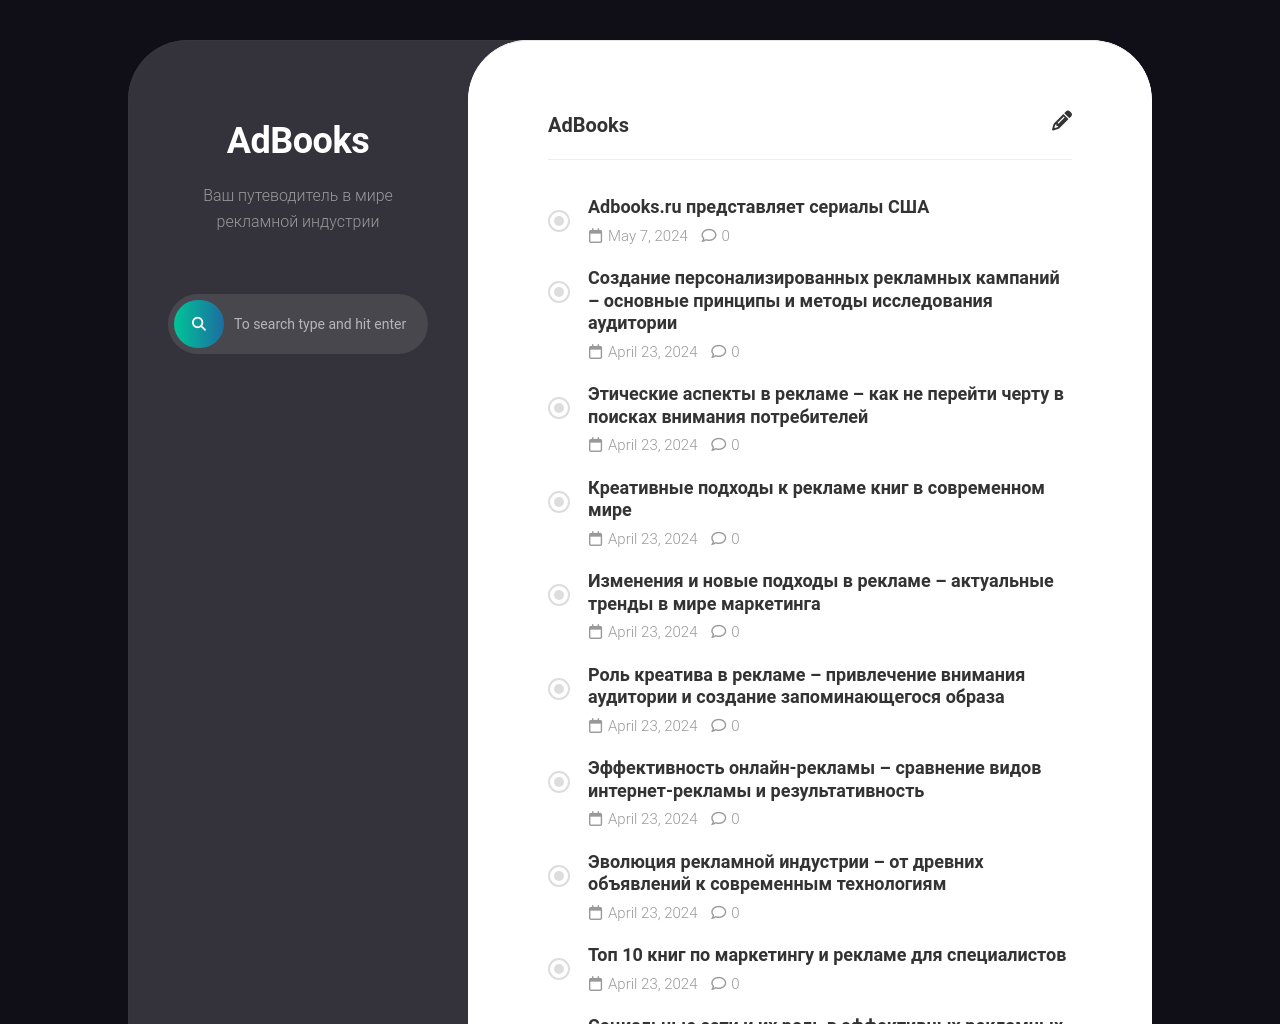 adbooks.ru